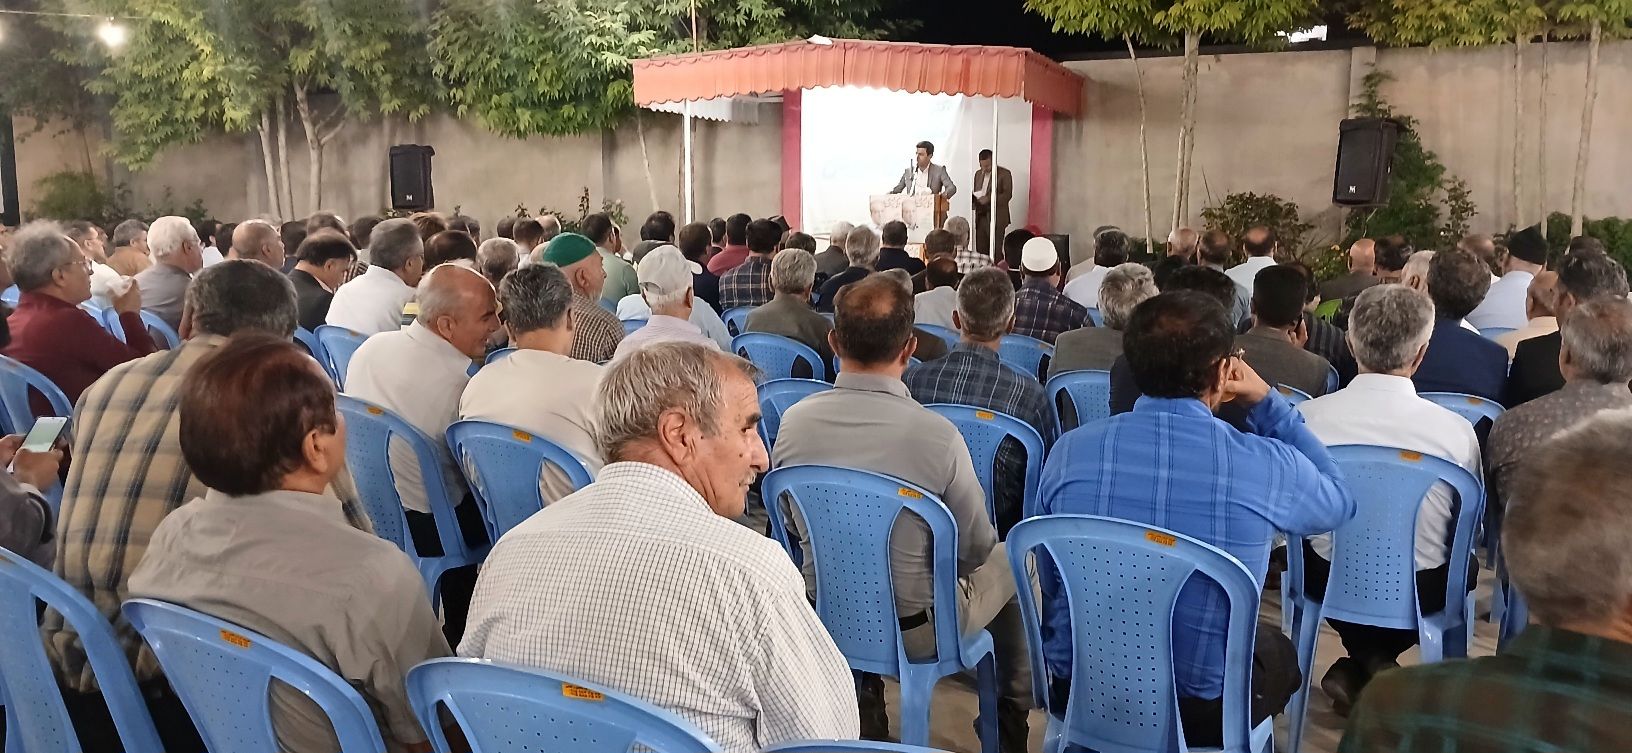 همایش بزرگ اعضای شوراهای اسلامی روستاها و دهیاران در شهرستان سملقان